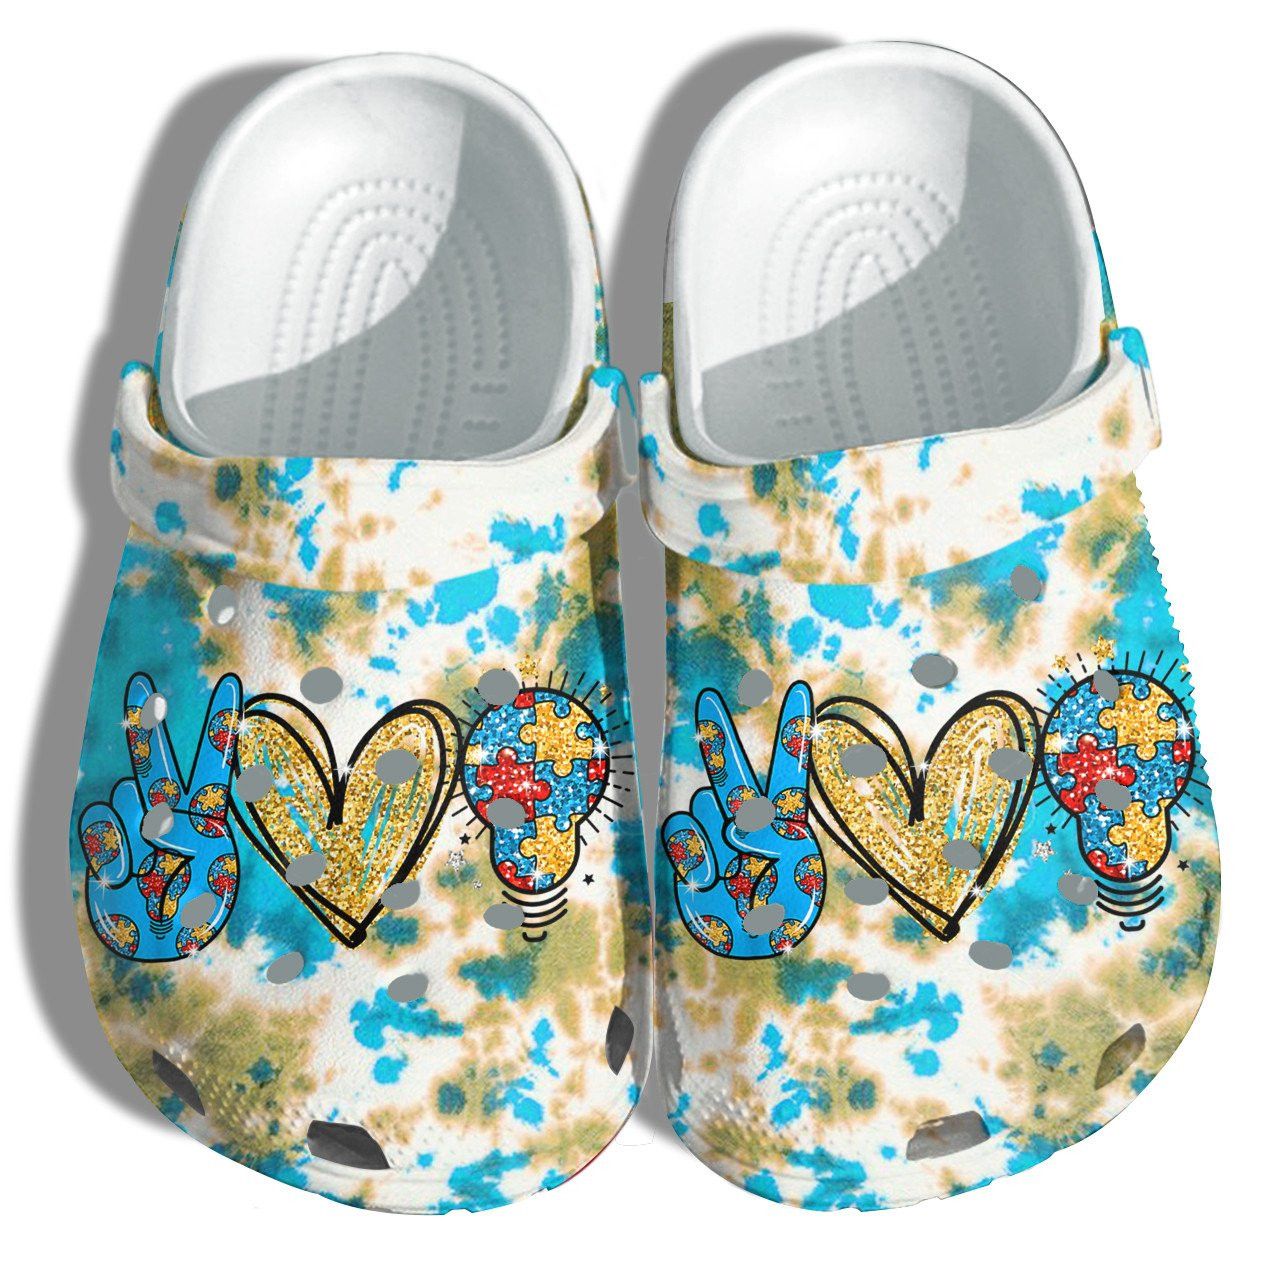 Peace Love Light Autism Puzzel Crocs Shoes - Autism Awareness Be Kind Blue Shoes Croc Clogs Gifts Son Daughter